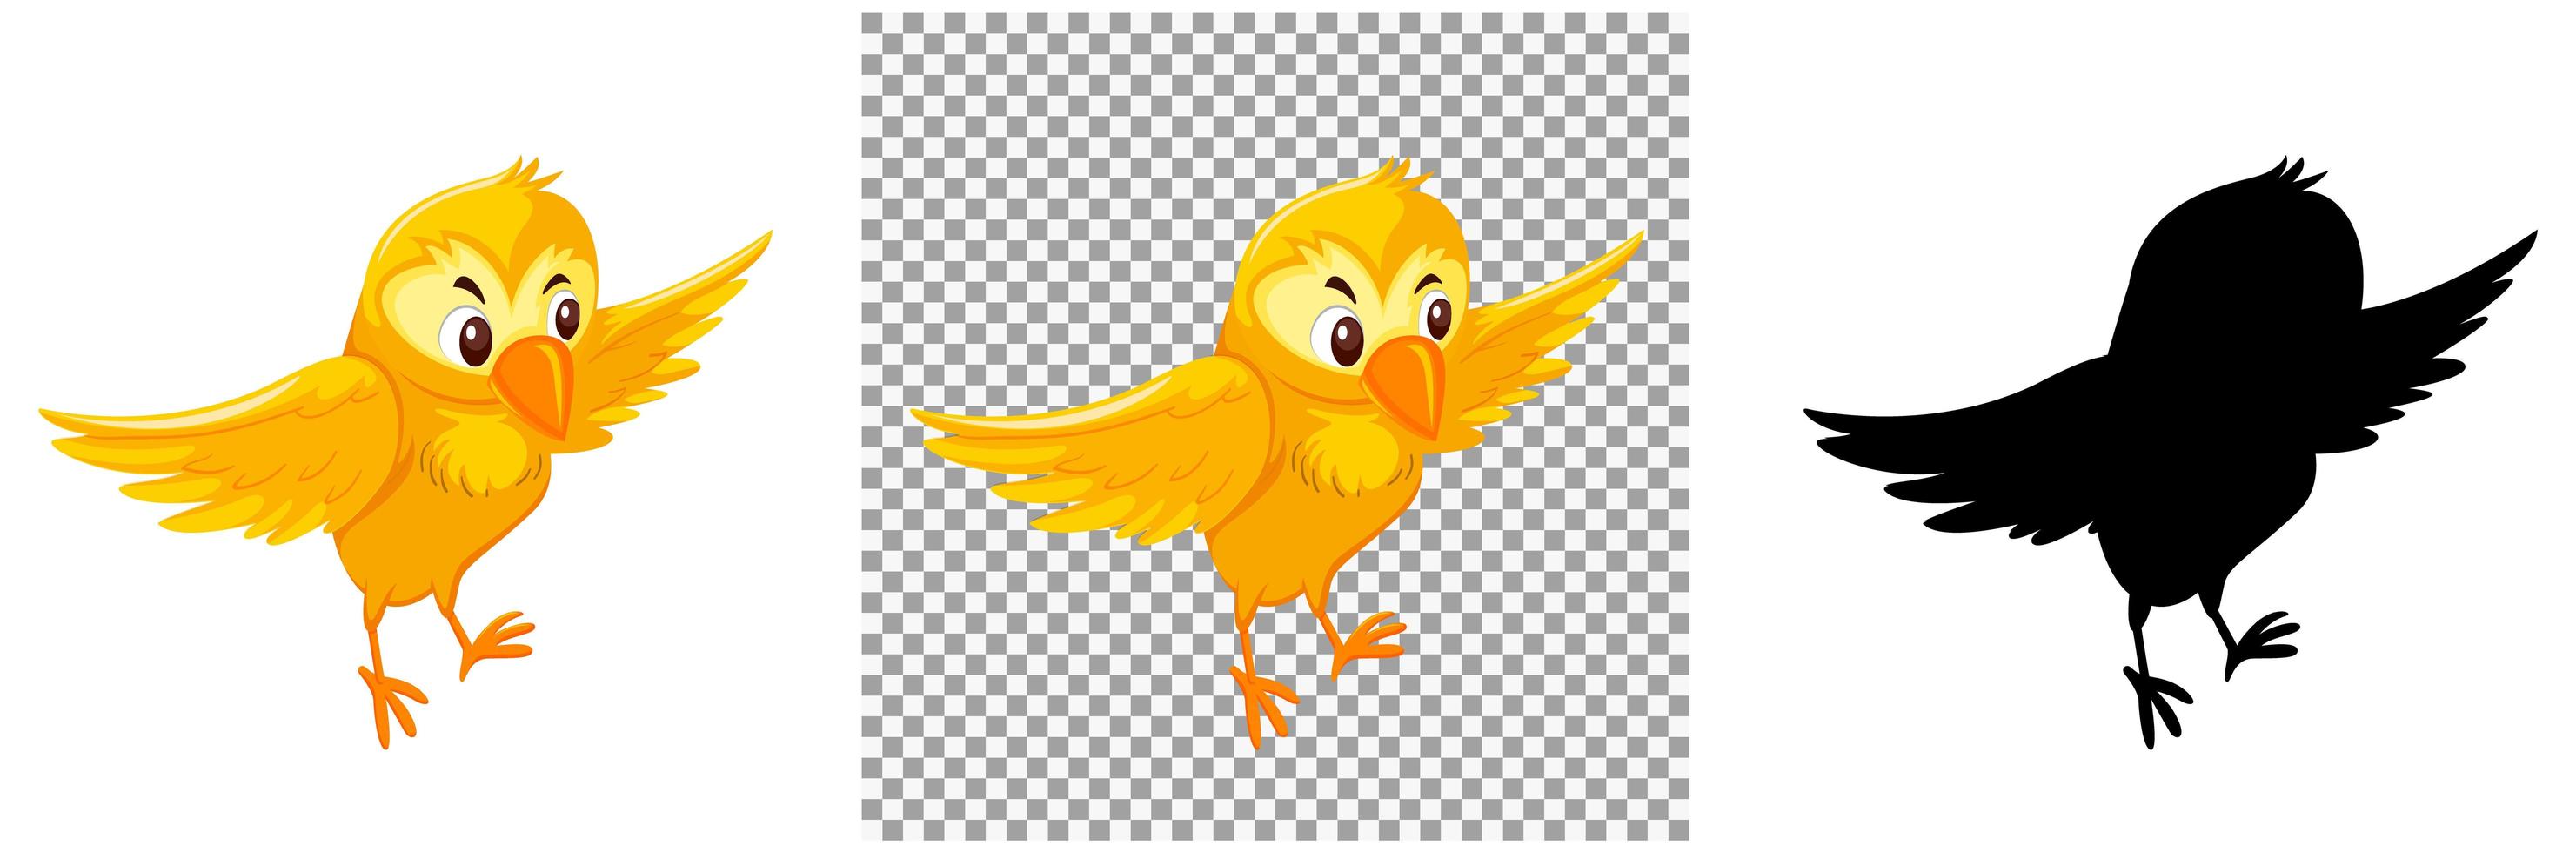 niedliche gelbe Vogel-Zeichentrickfigur vektor